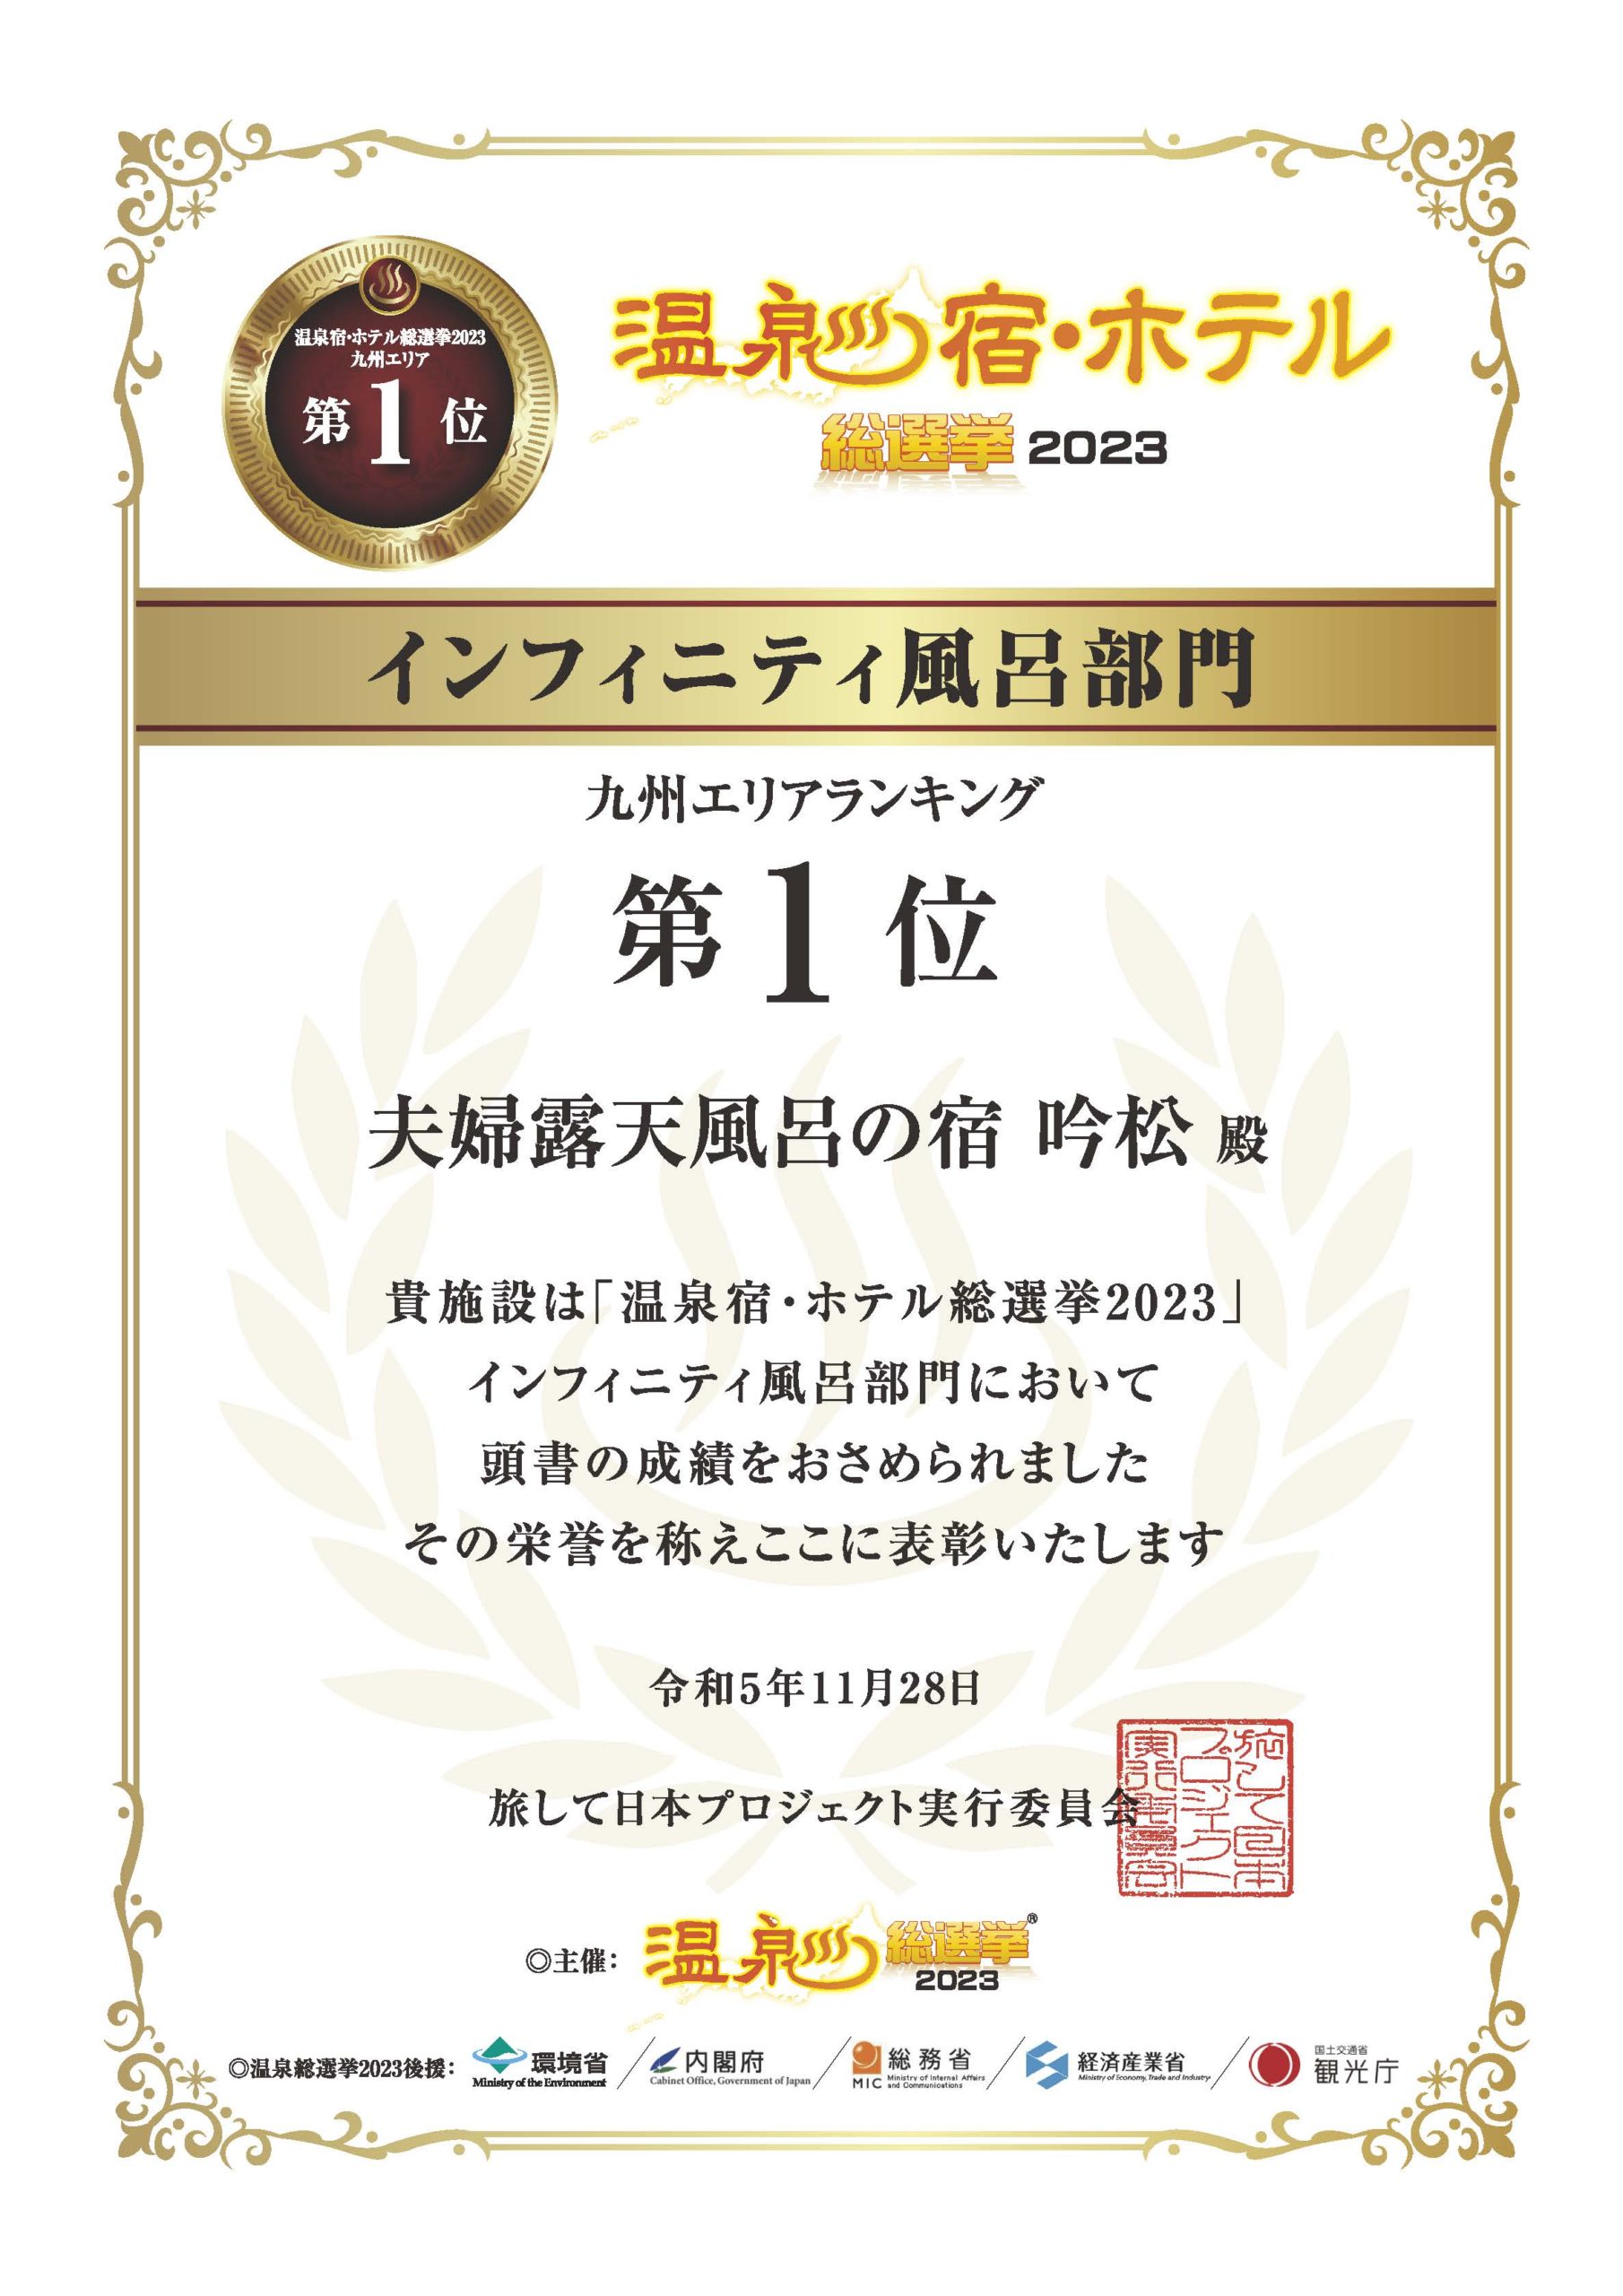 吟松  温泉宿・ホテル総選挙2023  九州エリア1位受賞のお知らせ